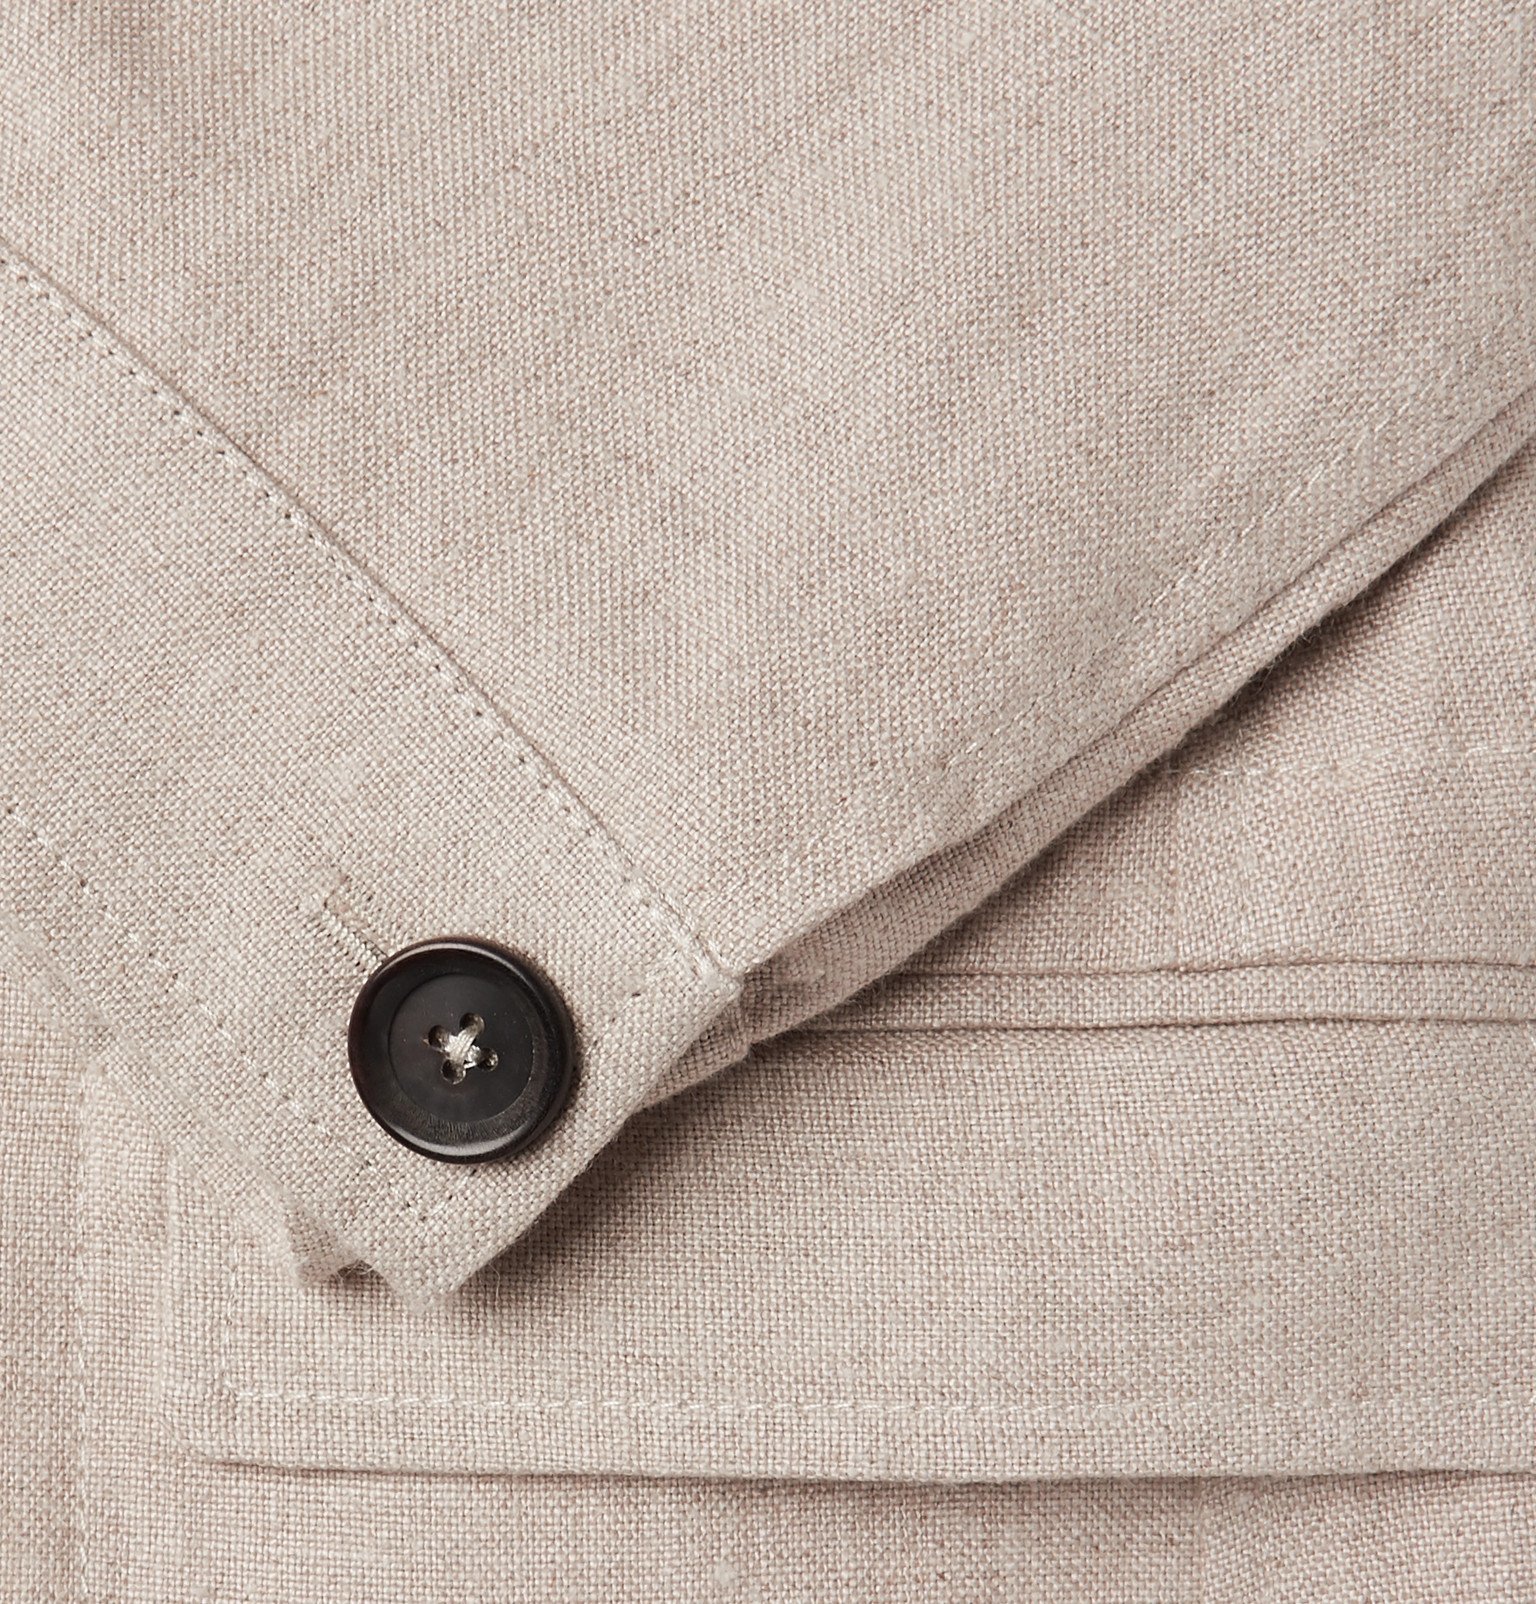 Oliver Spencer - Beige Brookes Unstructured Linen Suit Jacket - Neutrals